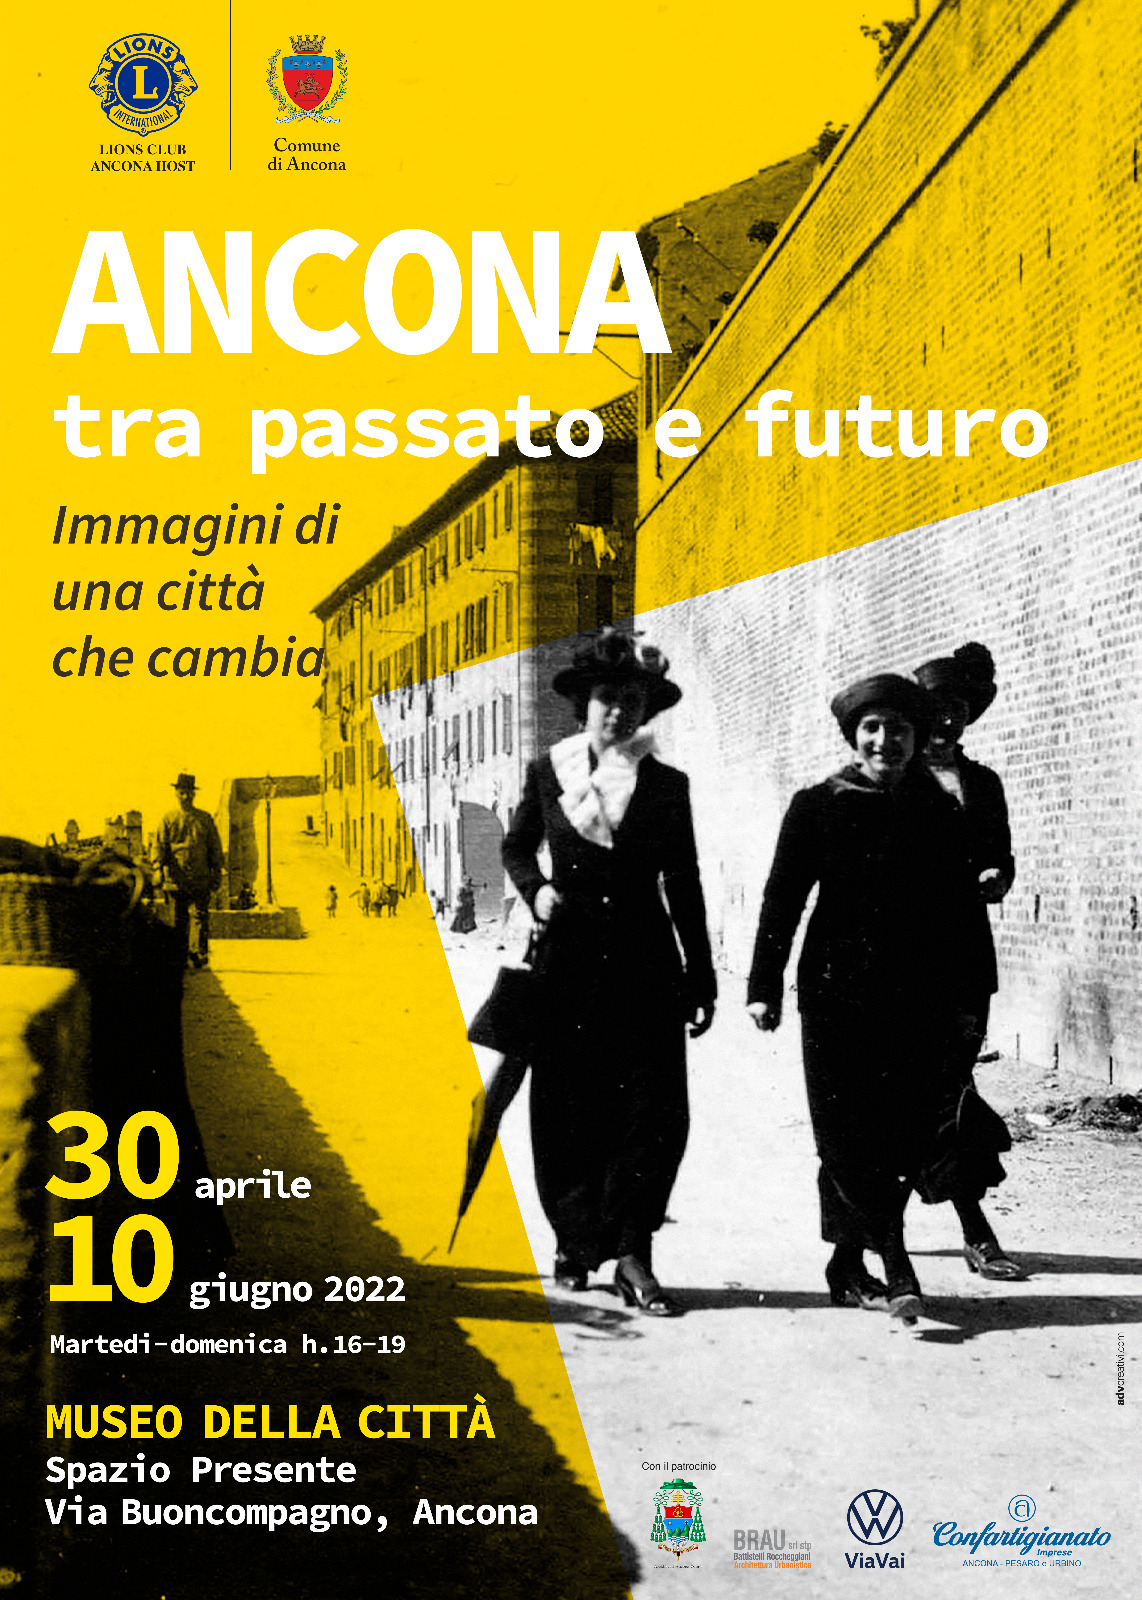 Mostra fotografica dal titolo 'Ancona tra passato e futuro' dal 30 aprile al 10 giugno 2022